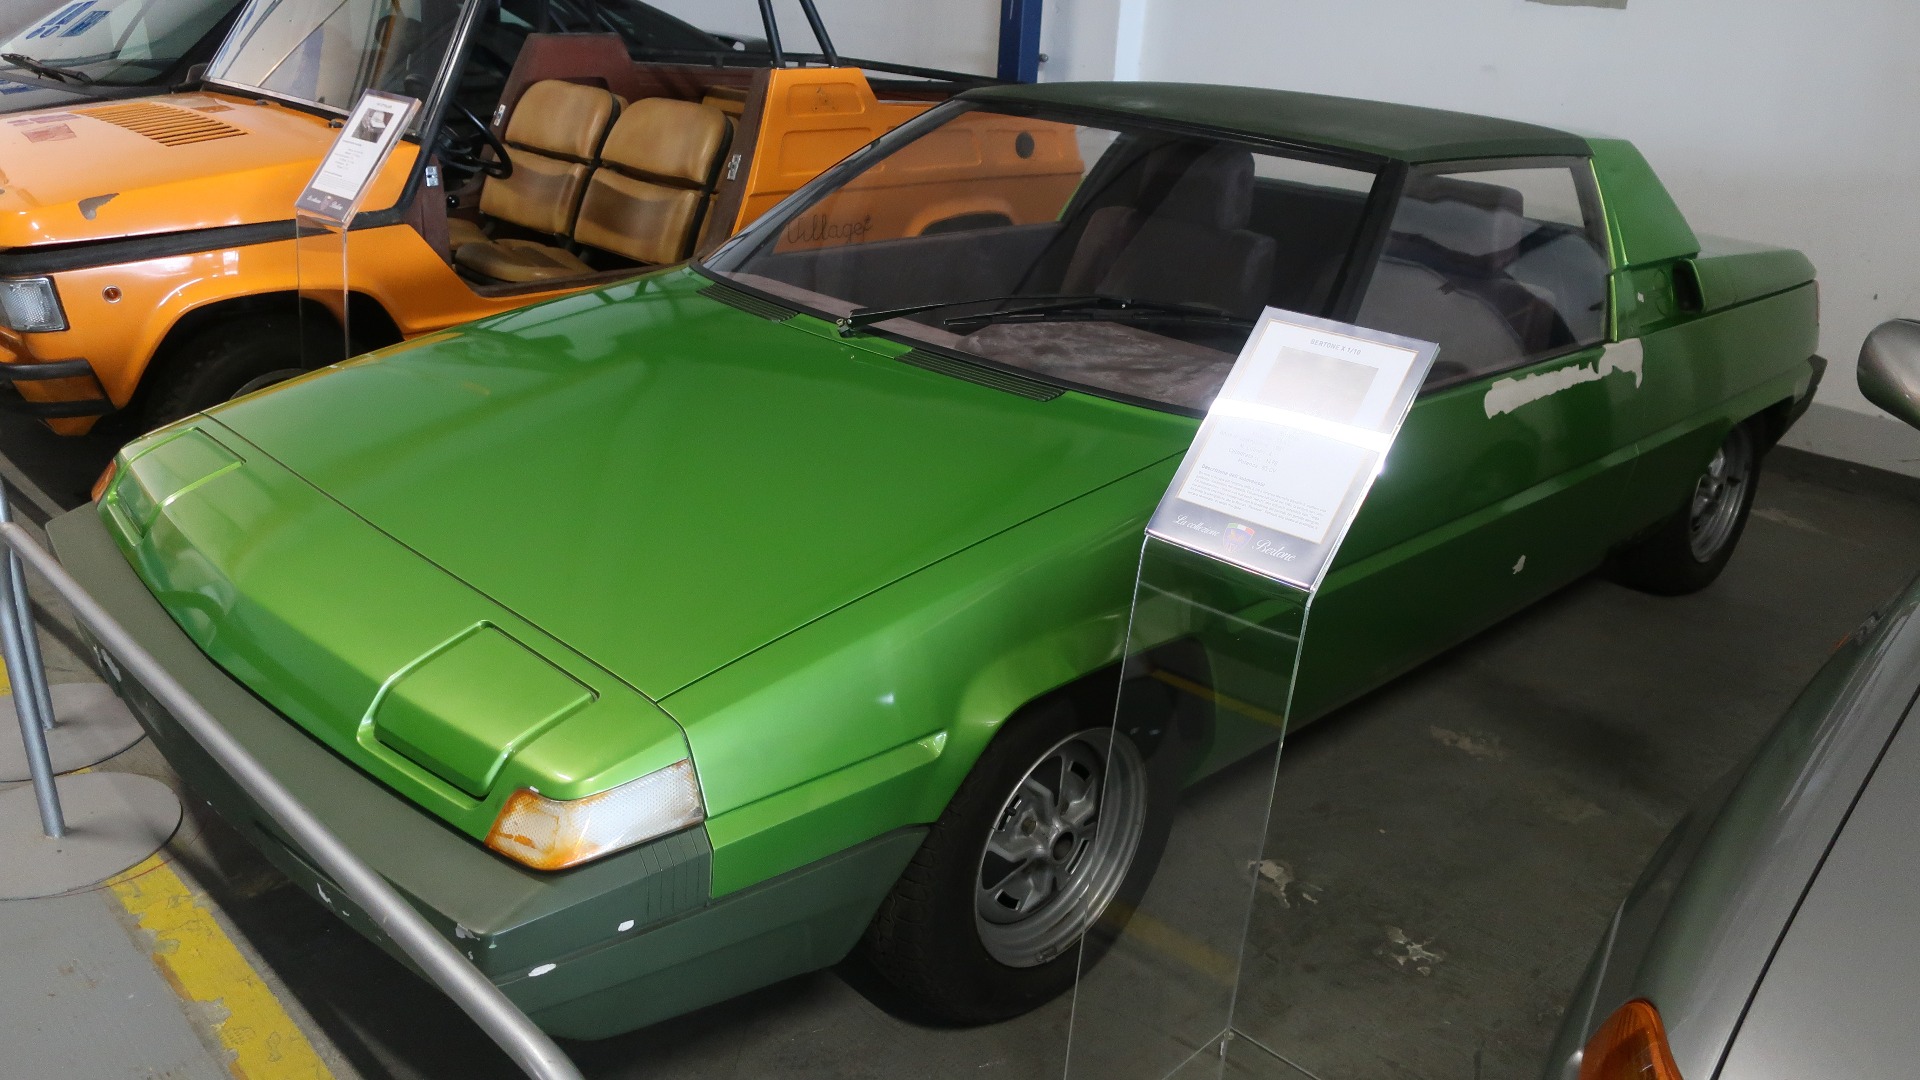 Gandini kom opp med dette forslaget til en etterfølger til Fiat X1 9, men det ble aldri noe mer enn denne protypen.